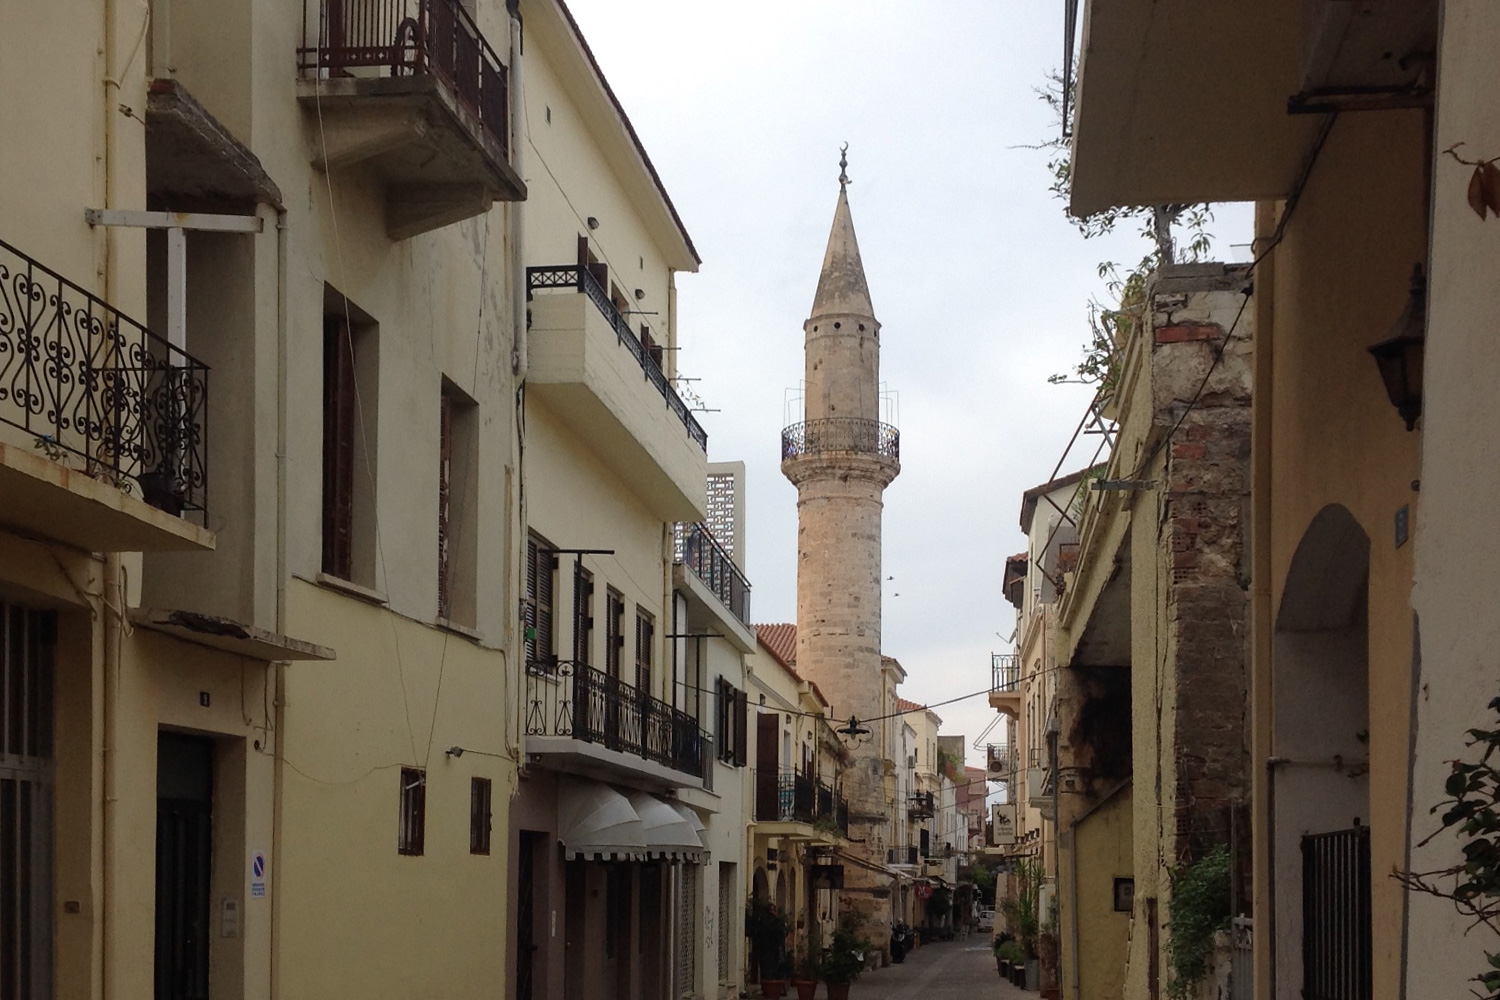 Minaret at daliani alley